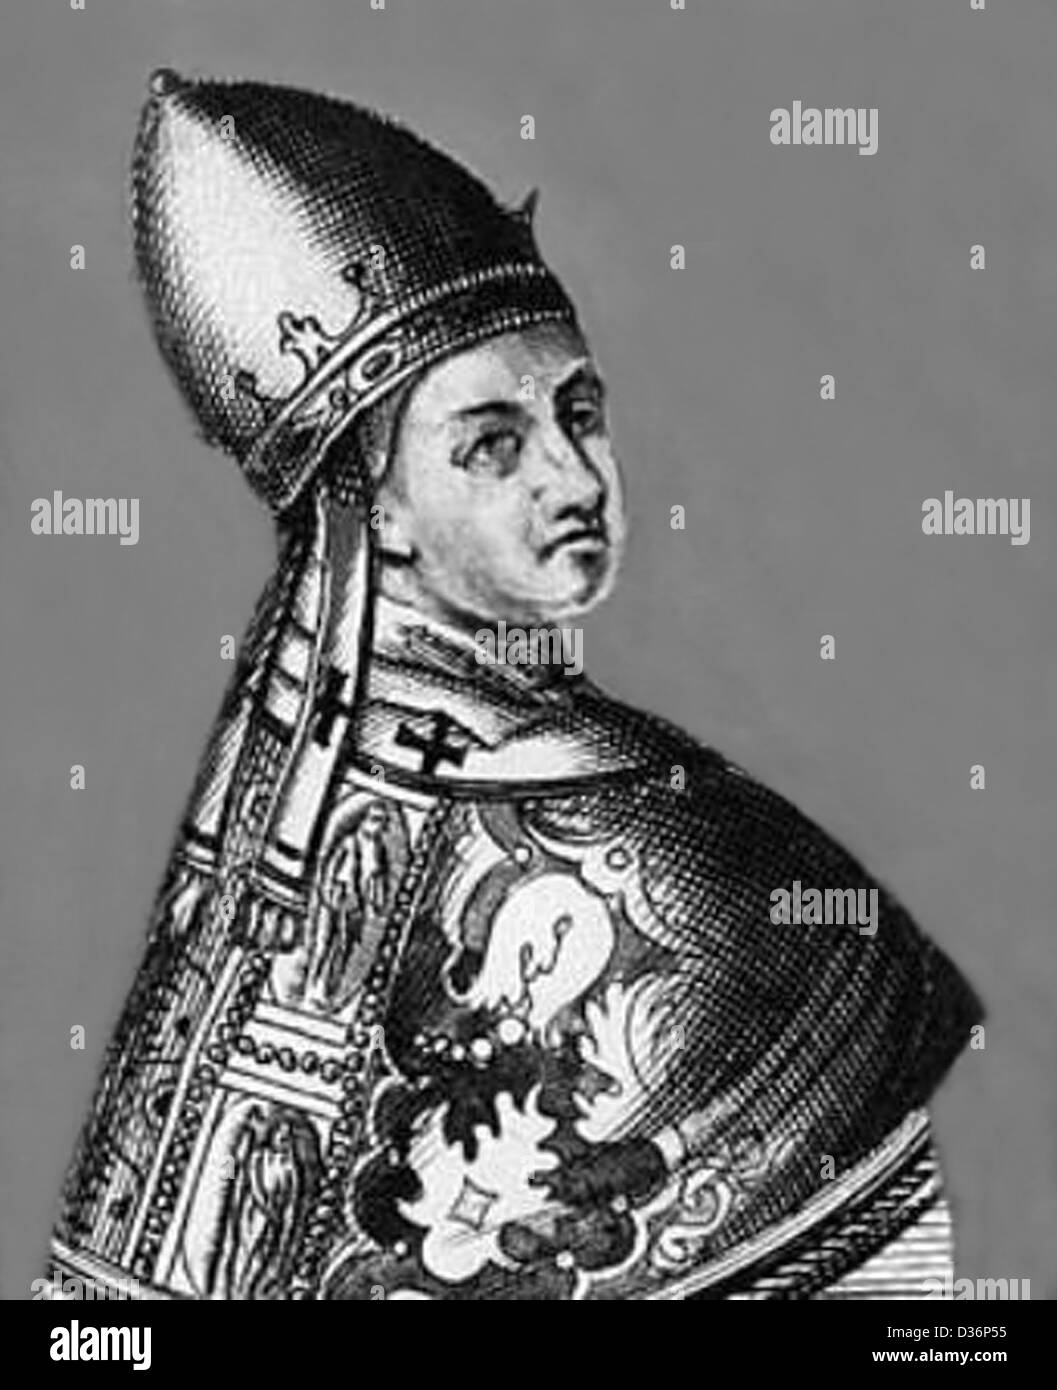 Grabado en blanco y negro retrato del Papa Benedicto IX Foto de stock